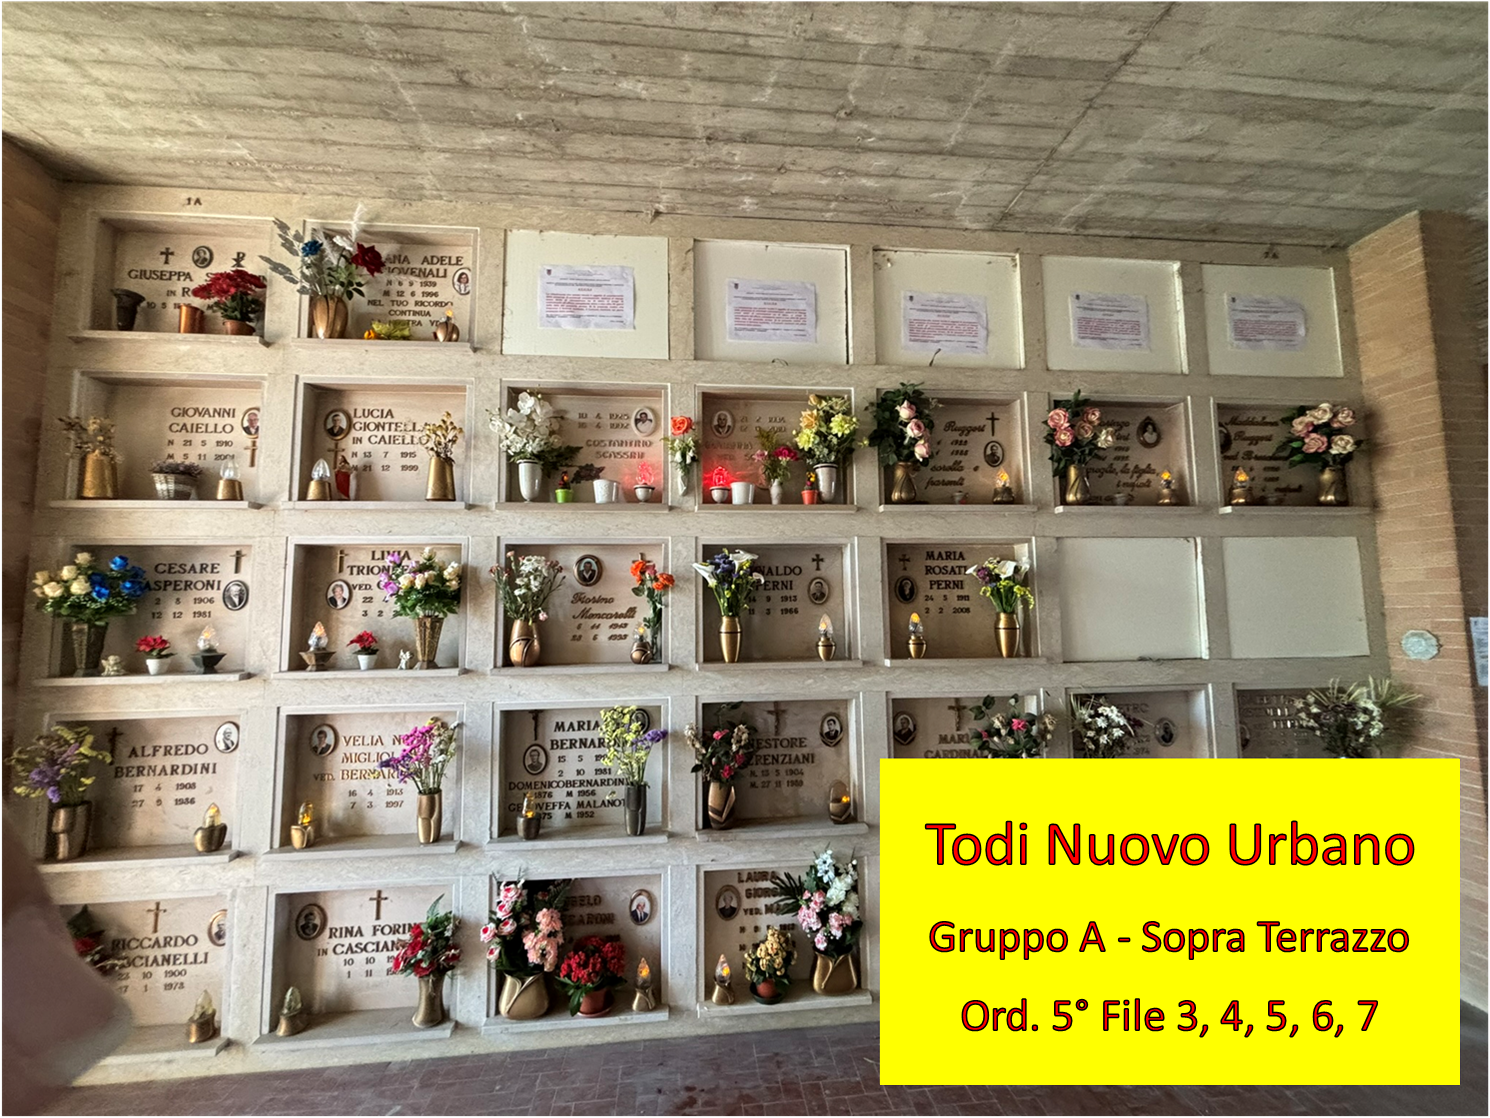 Individuazione loculi nel Cimitero di Todi Nuovo Urbano